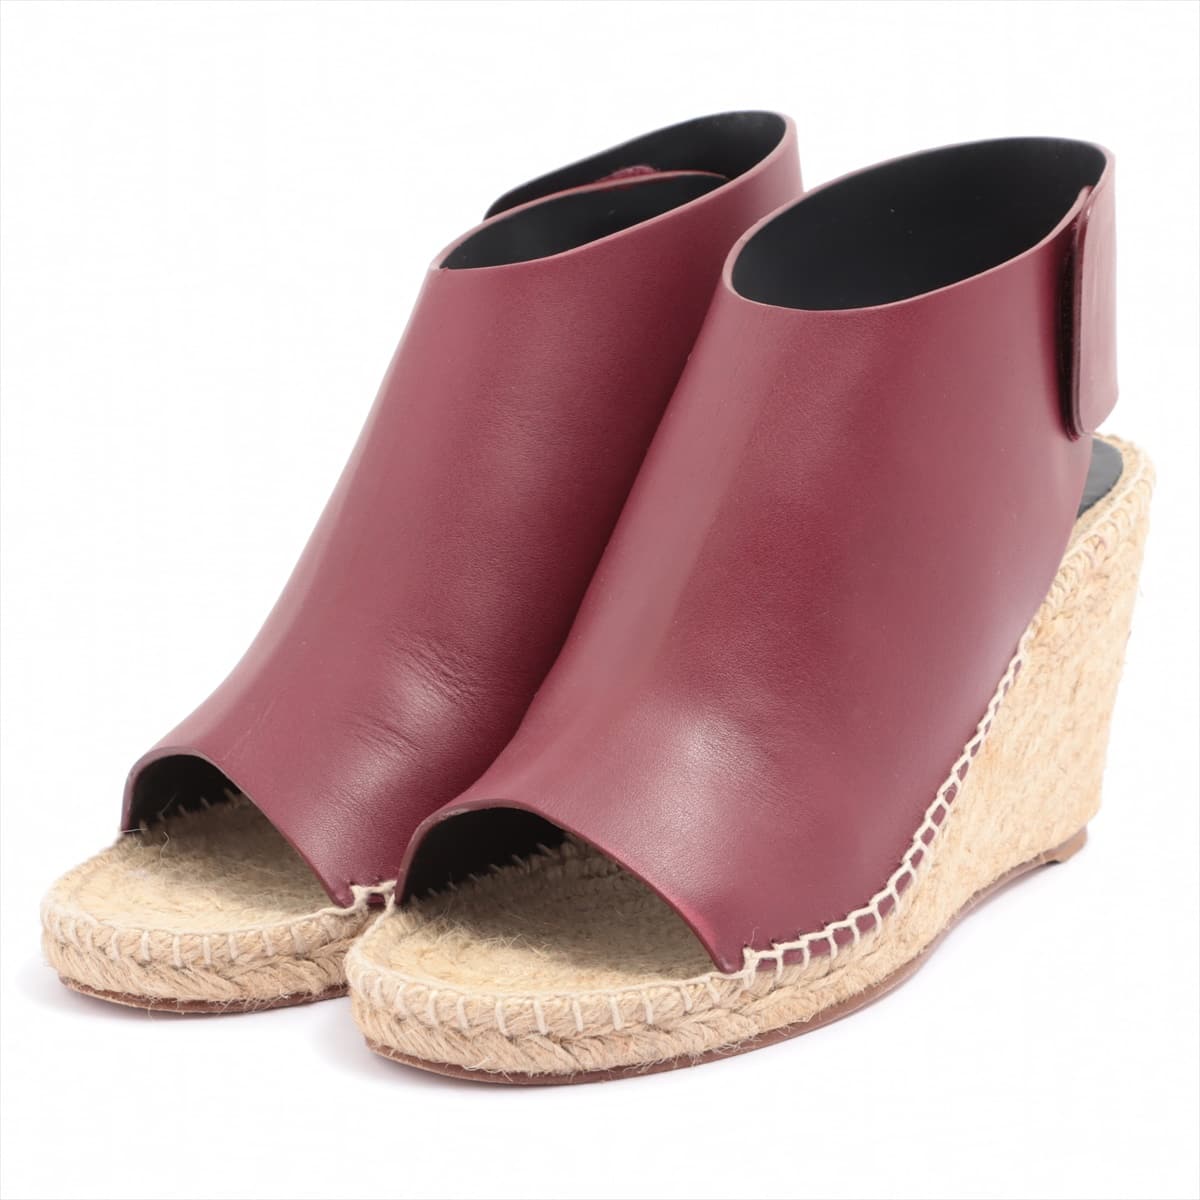 CELINE Leather Wedge Sole Sandals 37 Ladies' Bordeaux